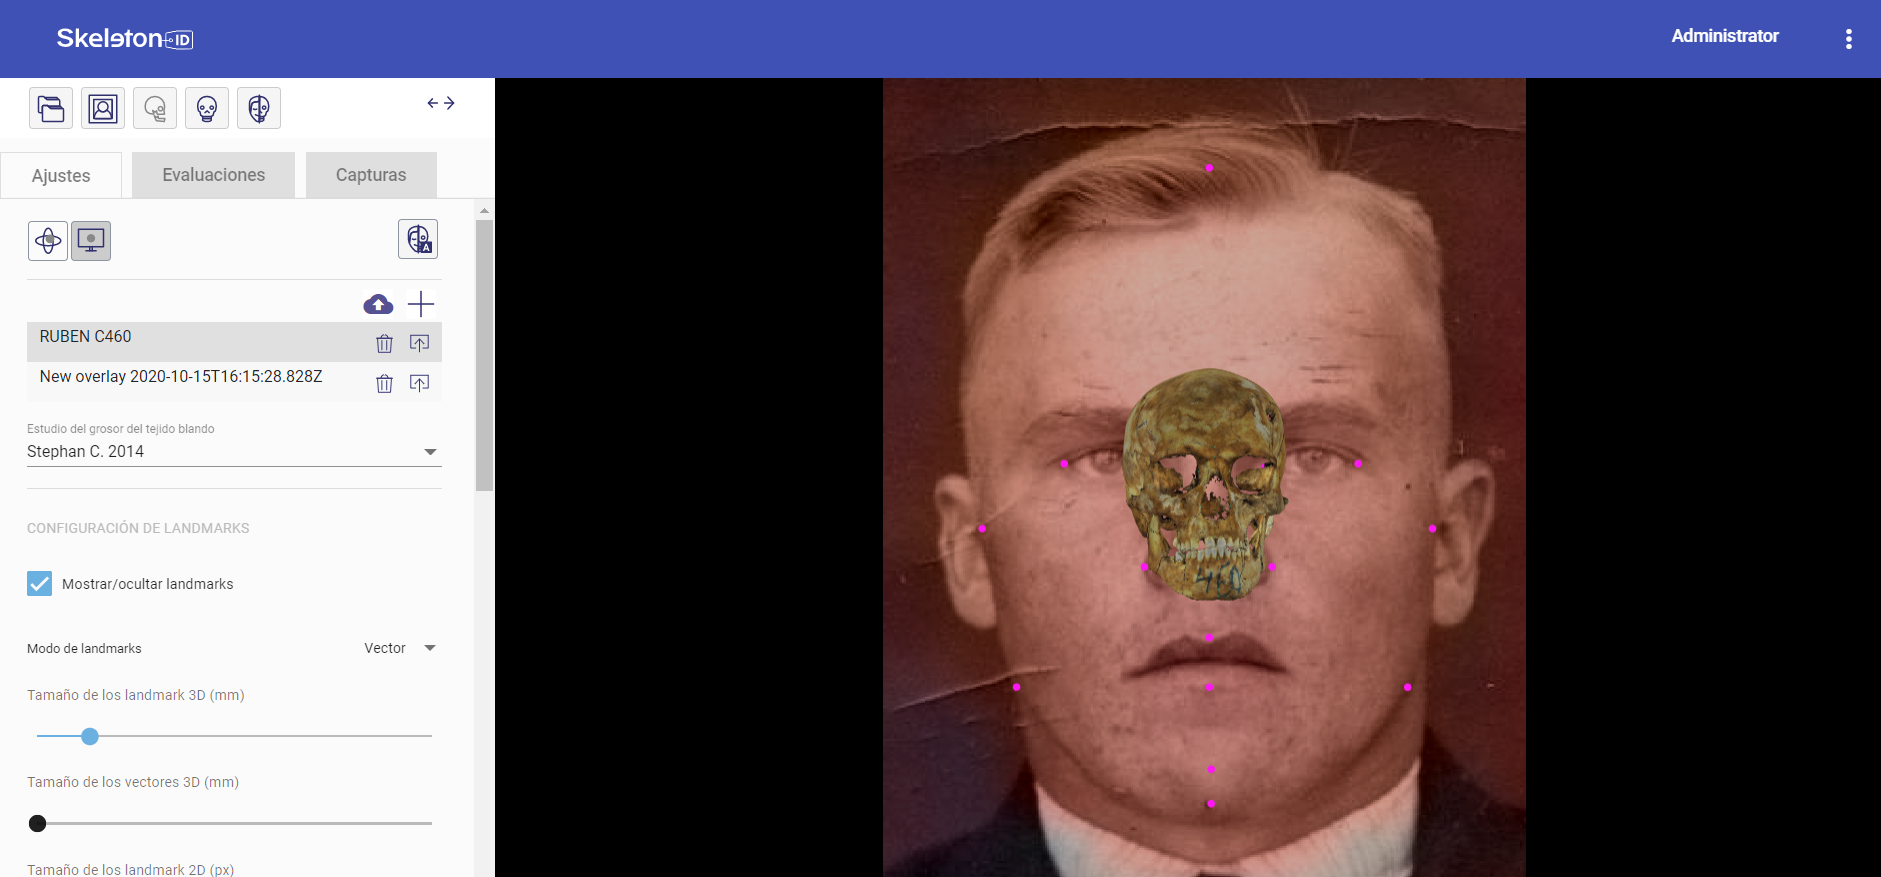 Escena de solapamiento cráneo-cara de Skeleton-ID